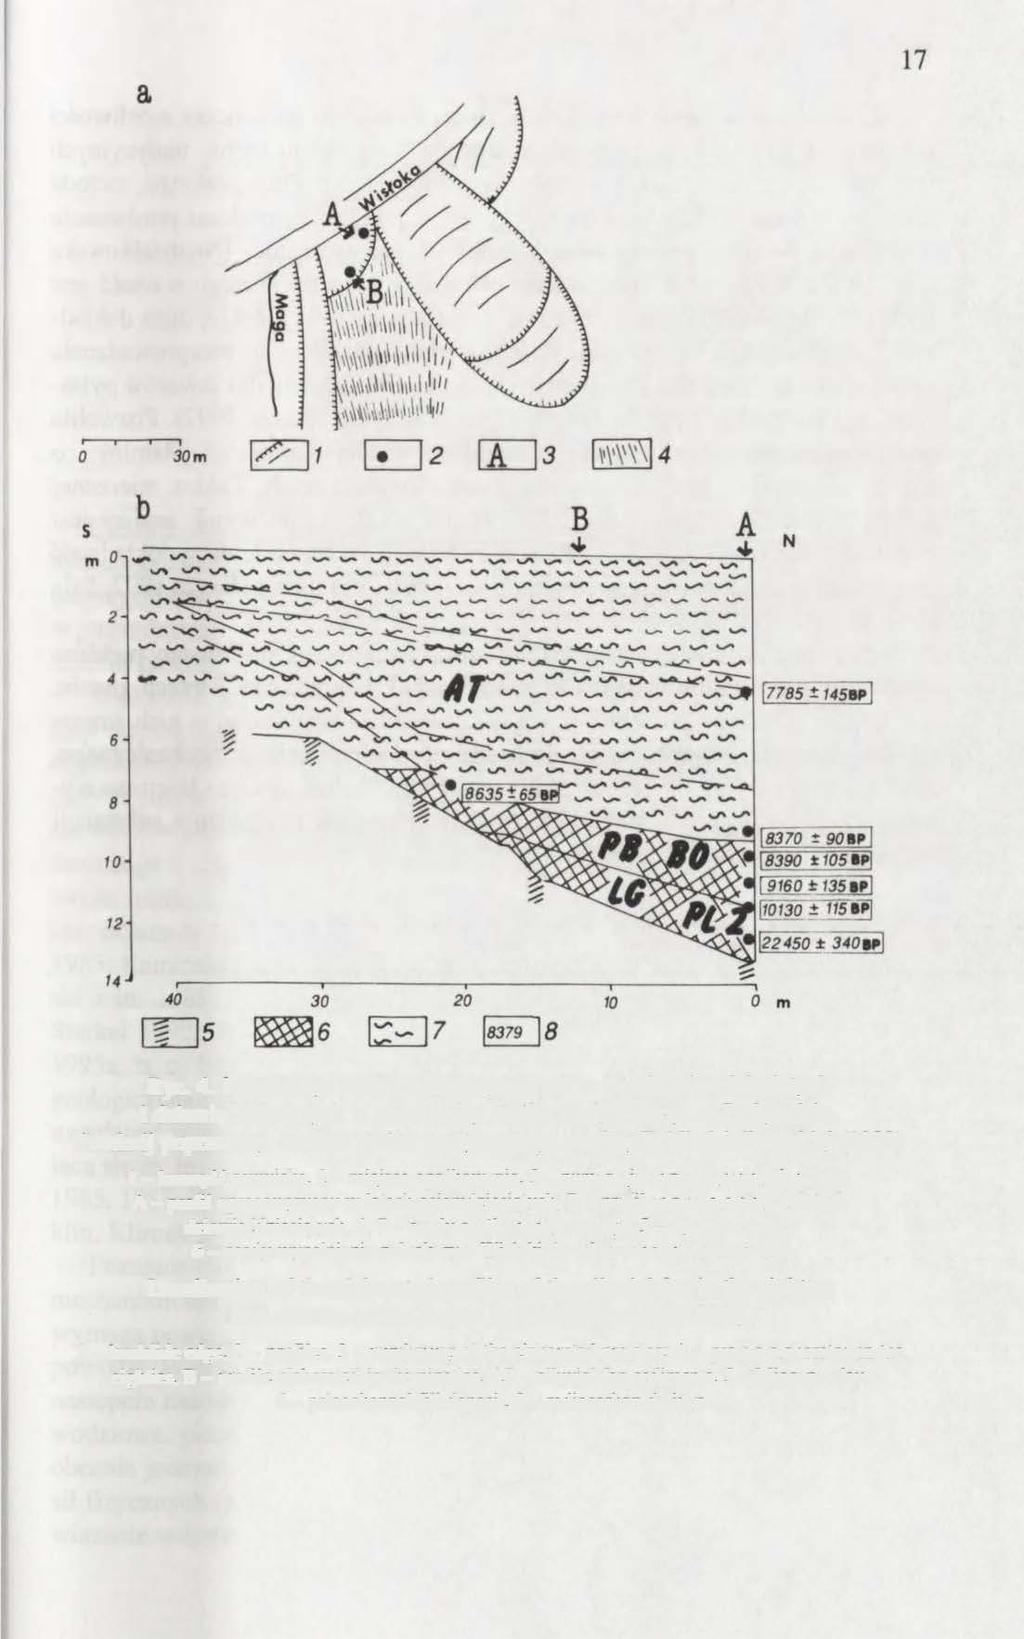 Rye. 4. Lokalizacja profili opracowywanych w latach osiemdziesiątych i dziewięćdziesiątych w pobocznicy stożka napływowego w Podgrodziu. Przekrój poprzeczny osadów stożka napływowego według E.